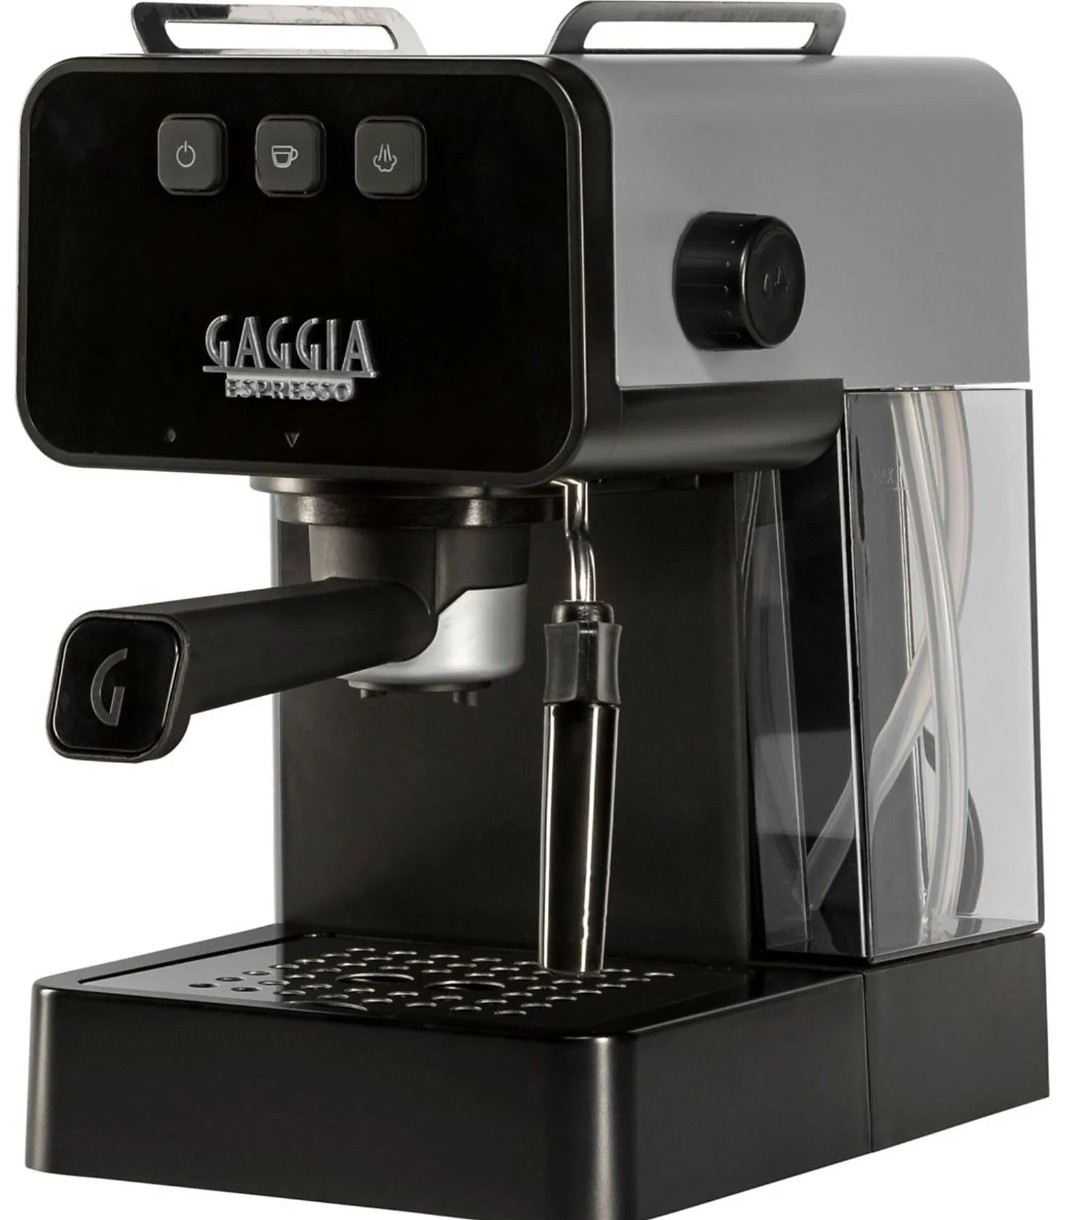 Электрокофеварка Gaggia Espresso Deluxe EG2111/64